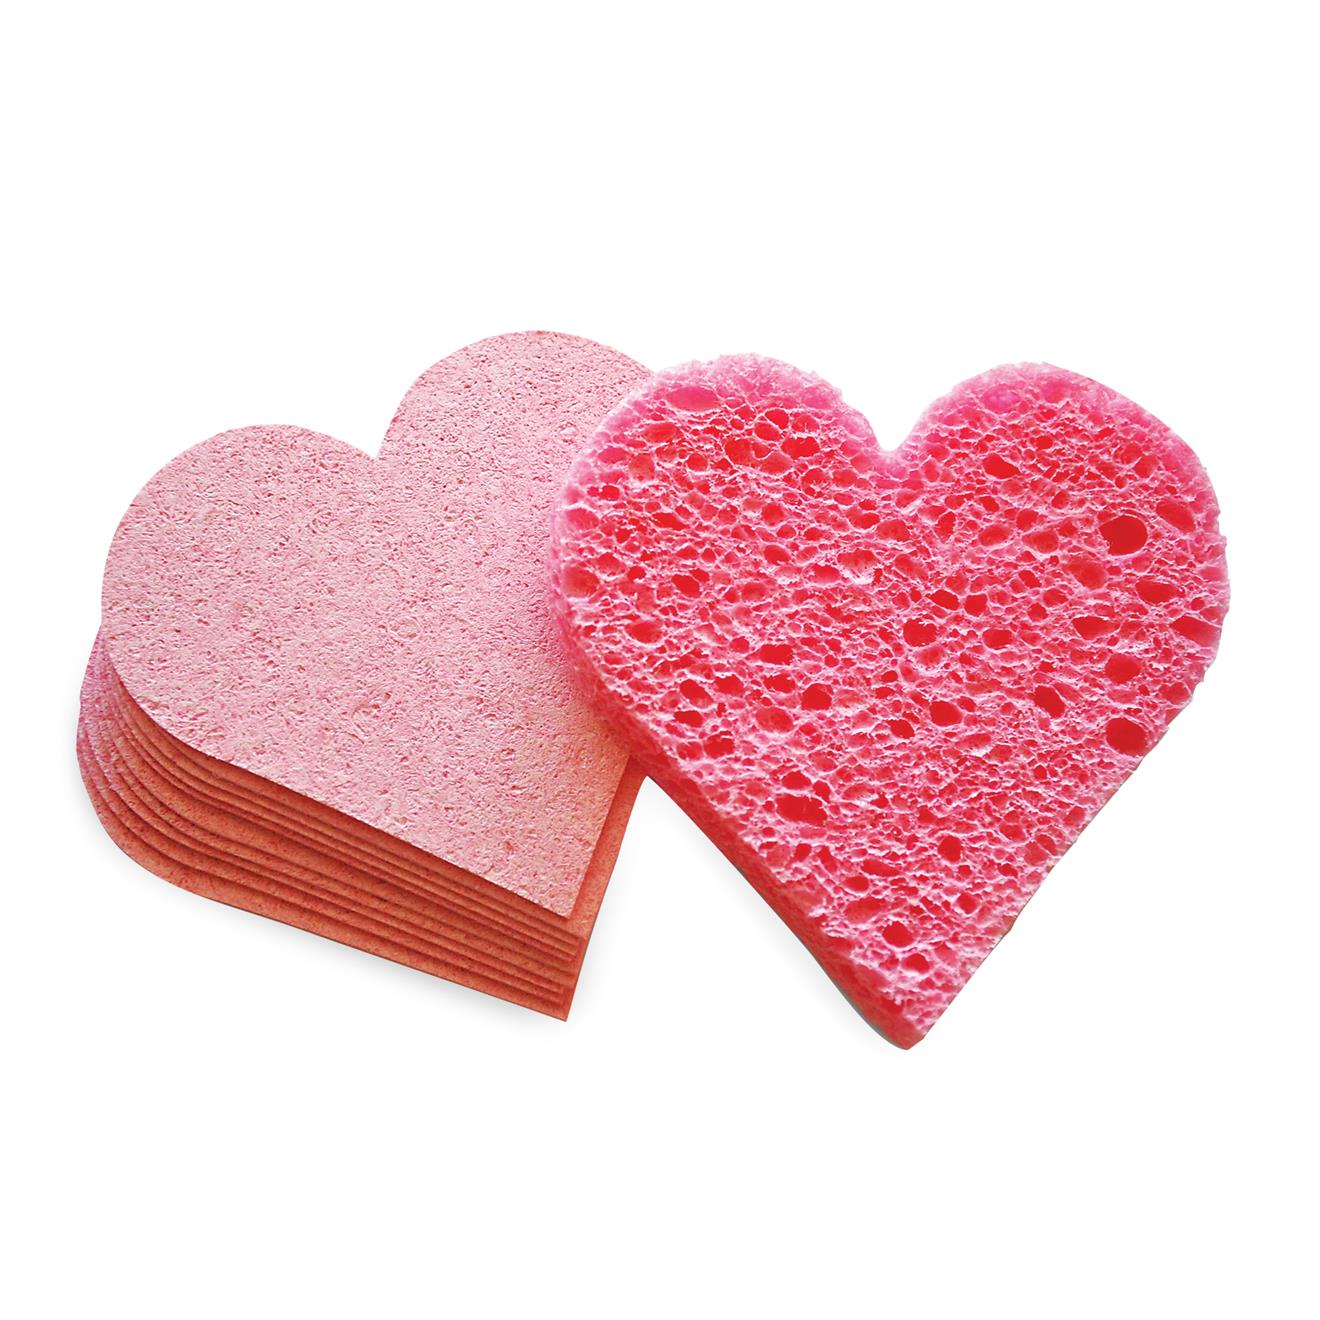 Minky Love Heart Sponges - Pack of 2